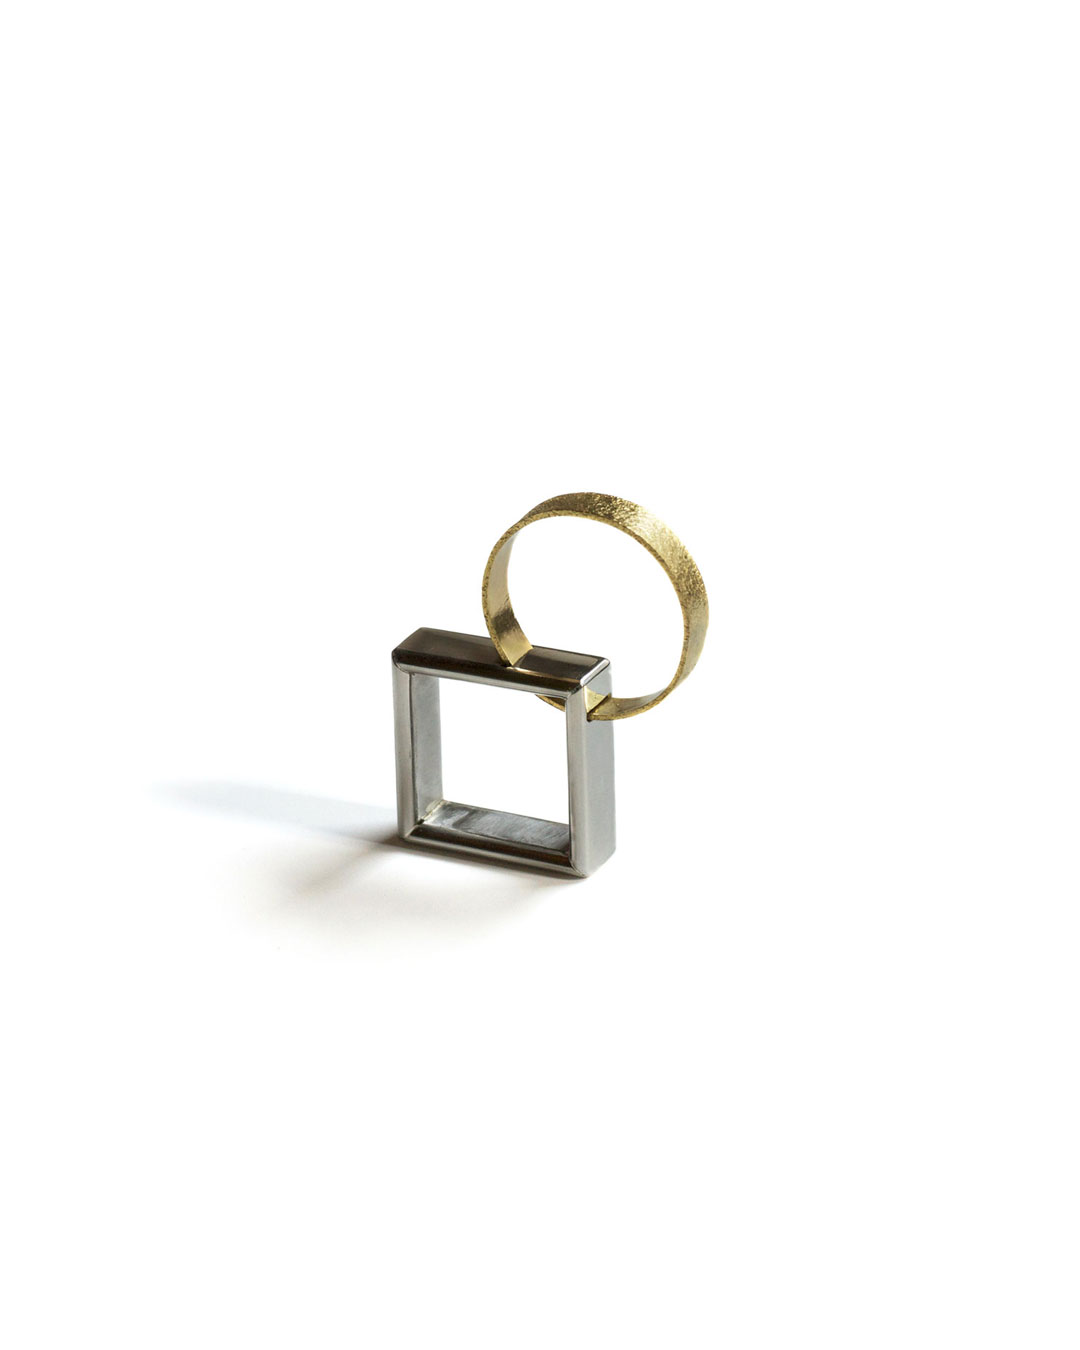 Okinari Kurokawa, untitled, 2013, ring; 20ct gold, stainless steel, 40 x 33 x 8 mm